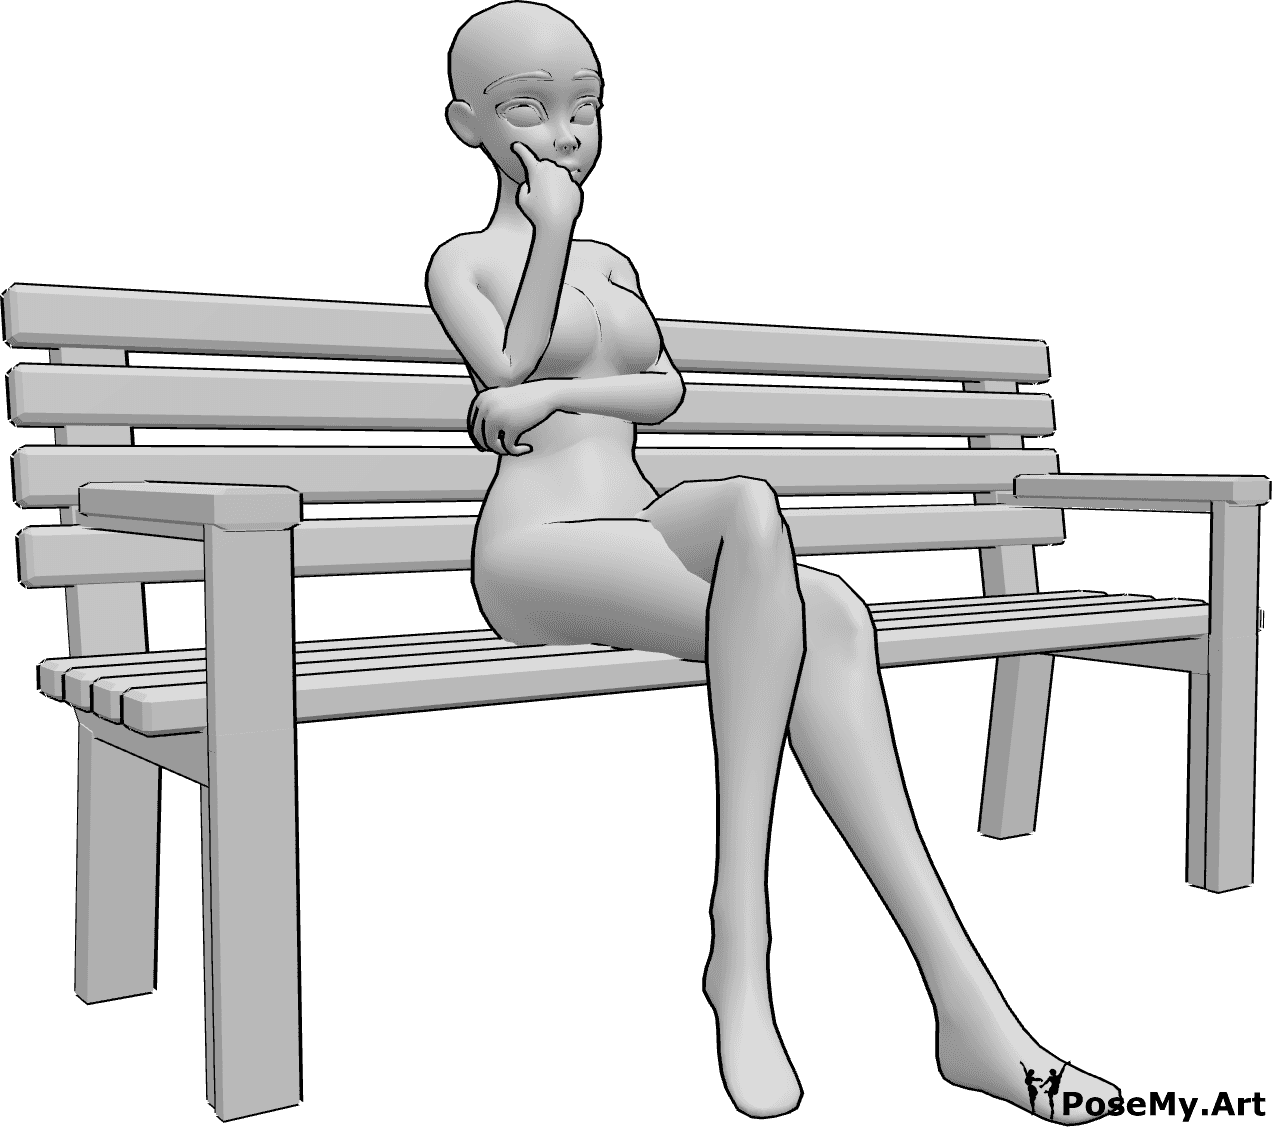 Referência de poses- Pose de banco sentado de anime - Uma mulher anime está sentada sozinha no banco, com as pernas cruzadas e a olhar para a frente, pensando